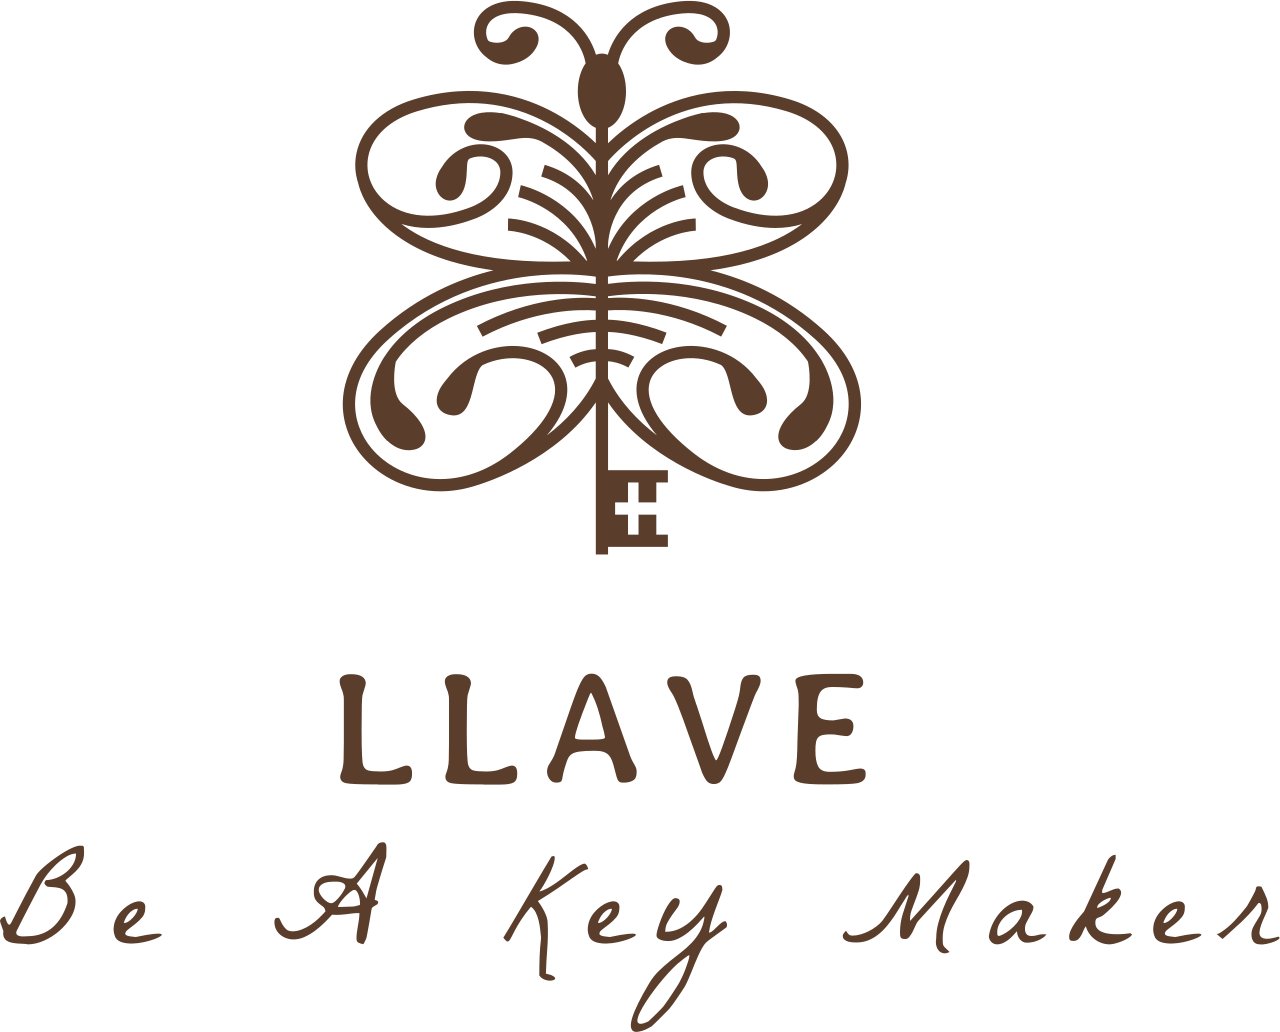 Llave's logo